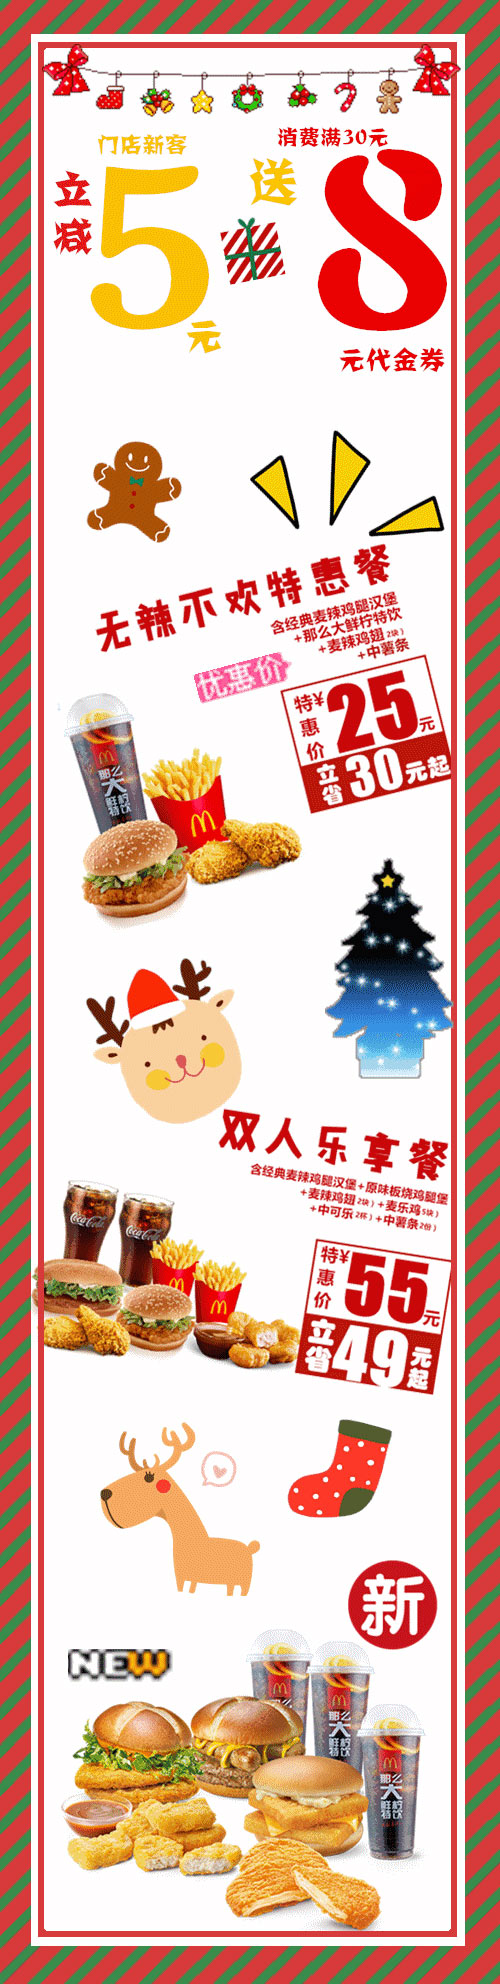 海南麦当劳外卖圣诞优惠，新客立减5元、满30送8元券